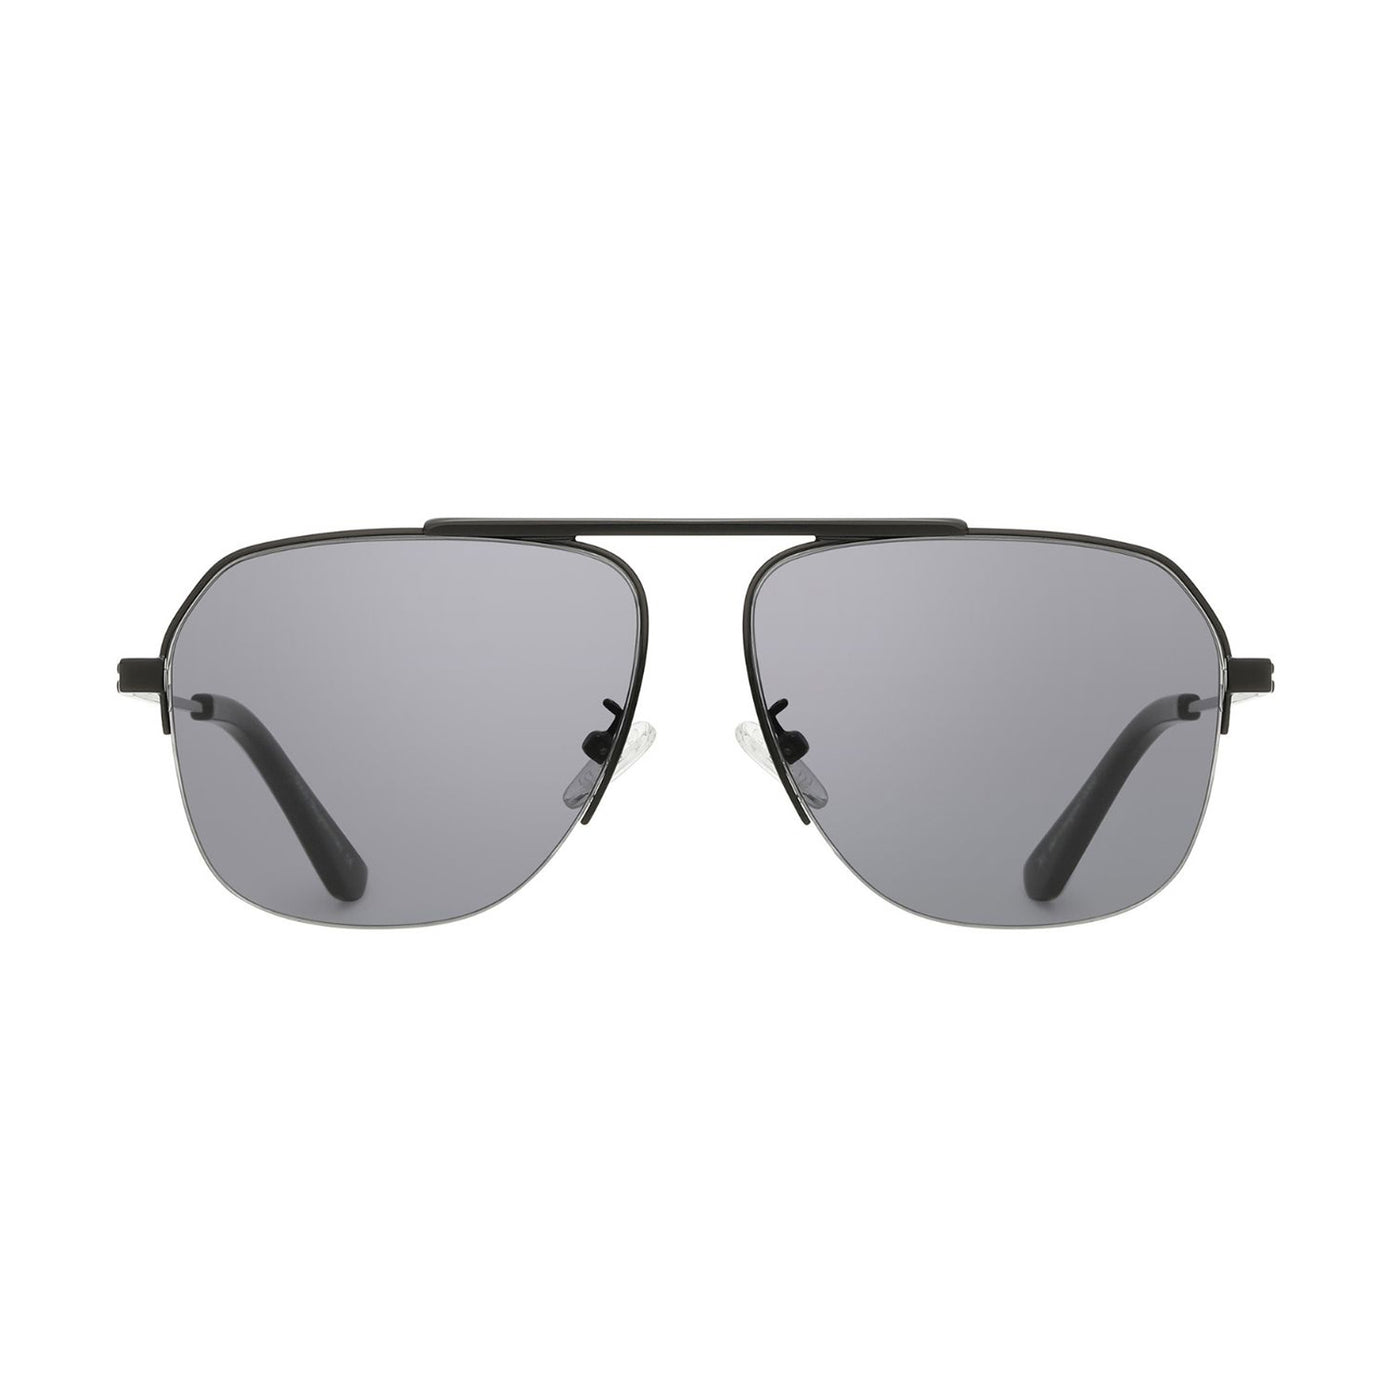 DUCO Retro Aviator Sunglasses for Mens Non-Polarized Sun Glasses for Driving DC3035